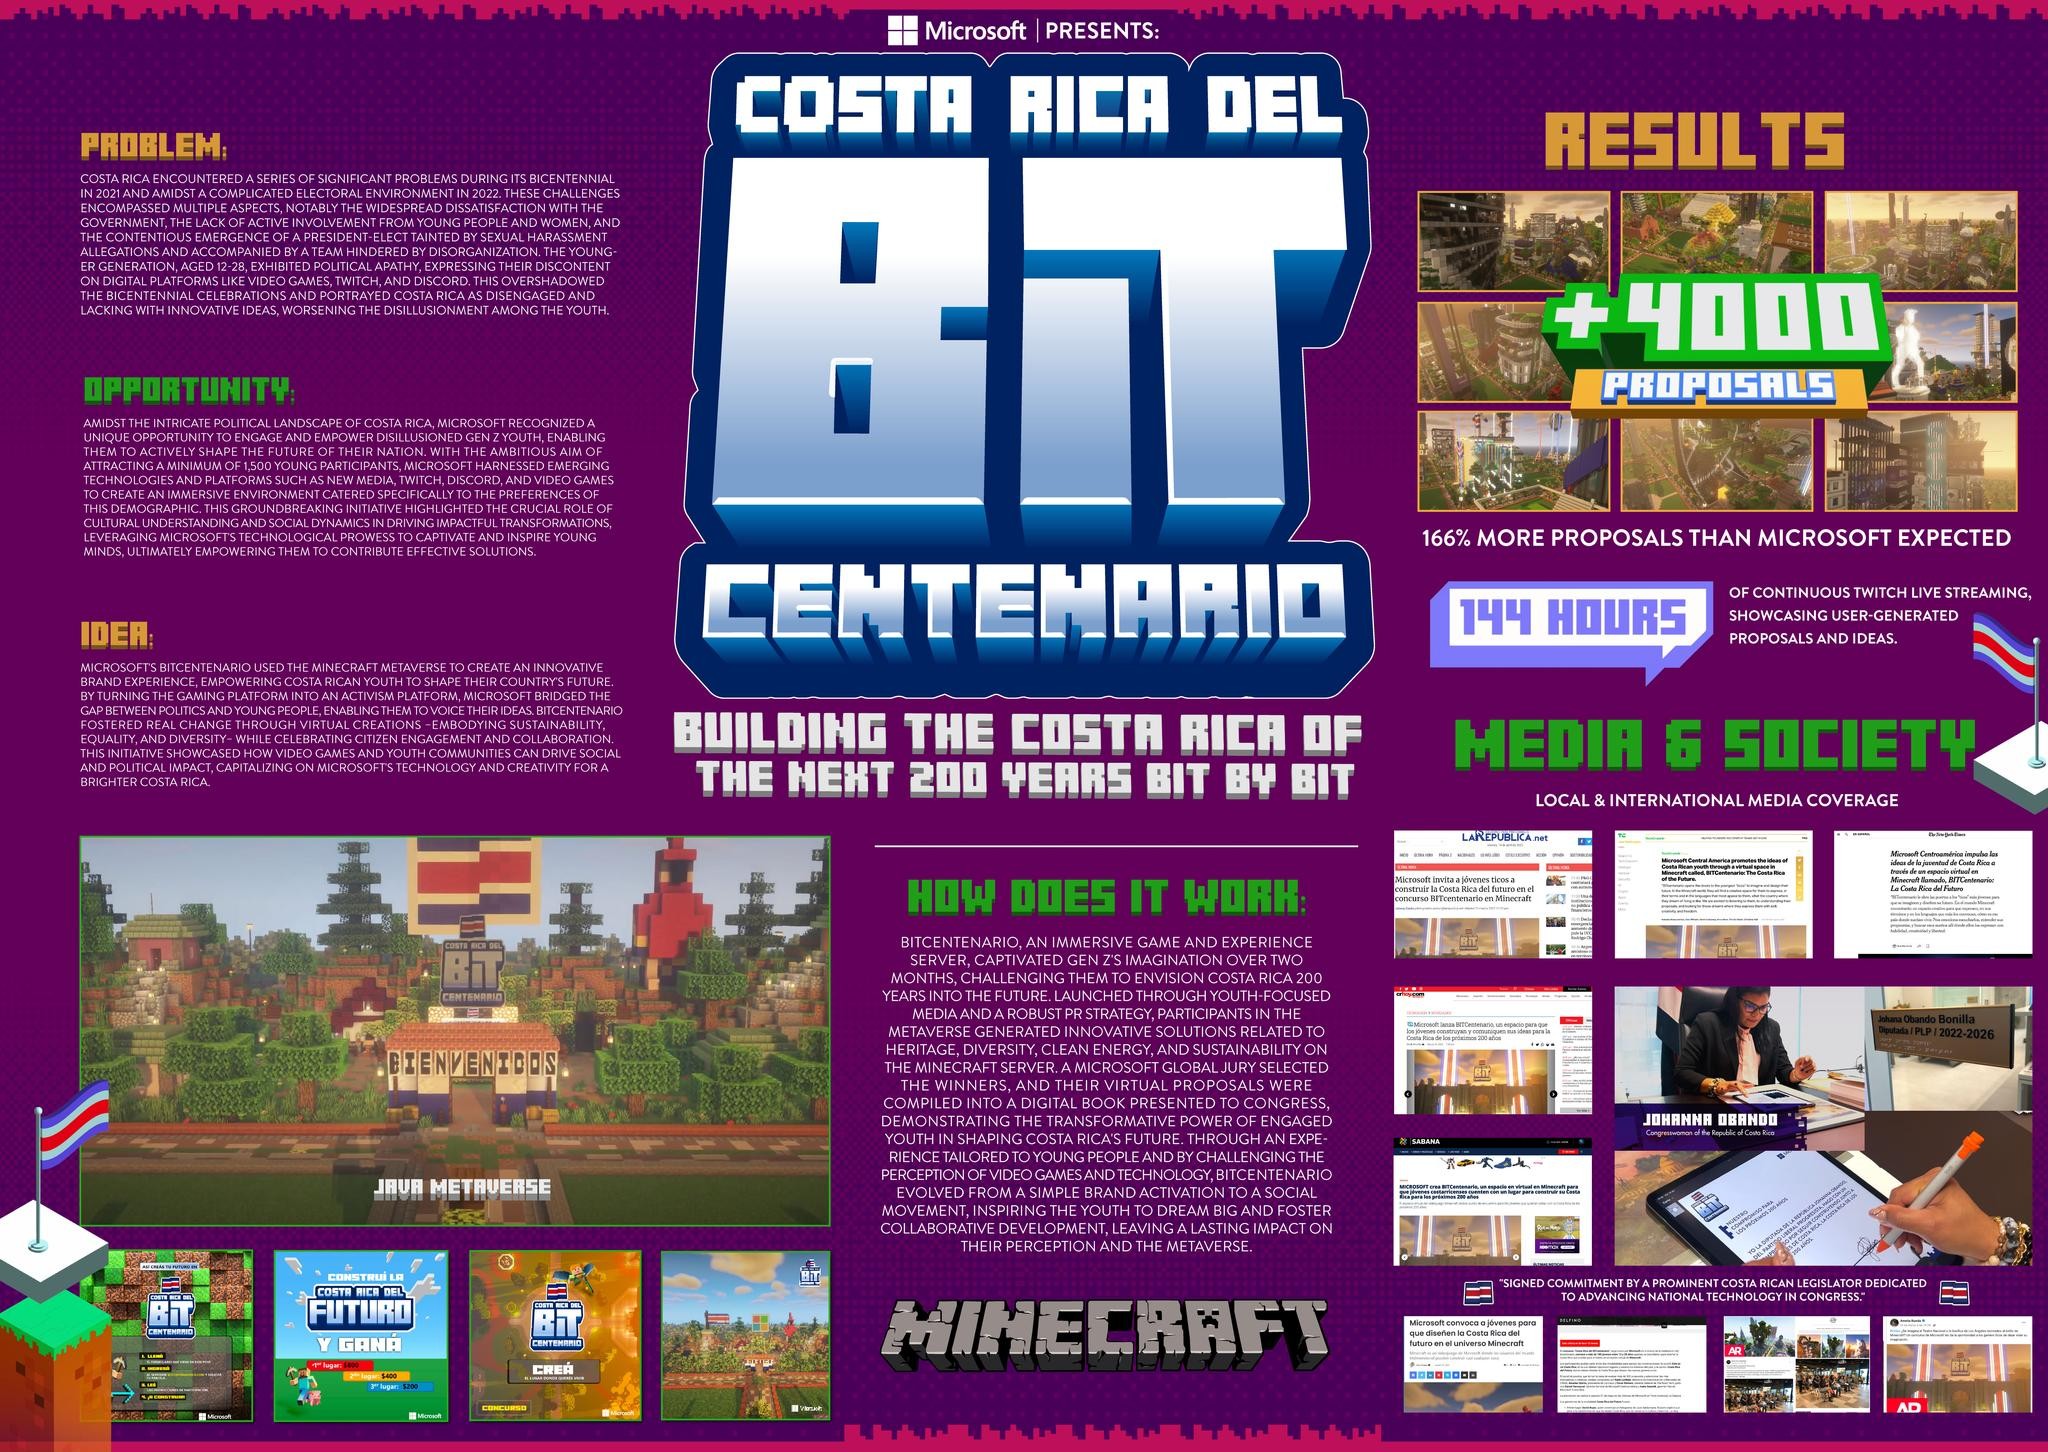 BITCentenario: The Costa Rica of the Future